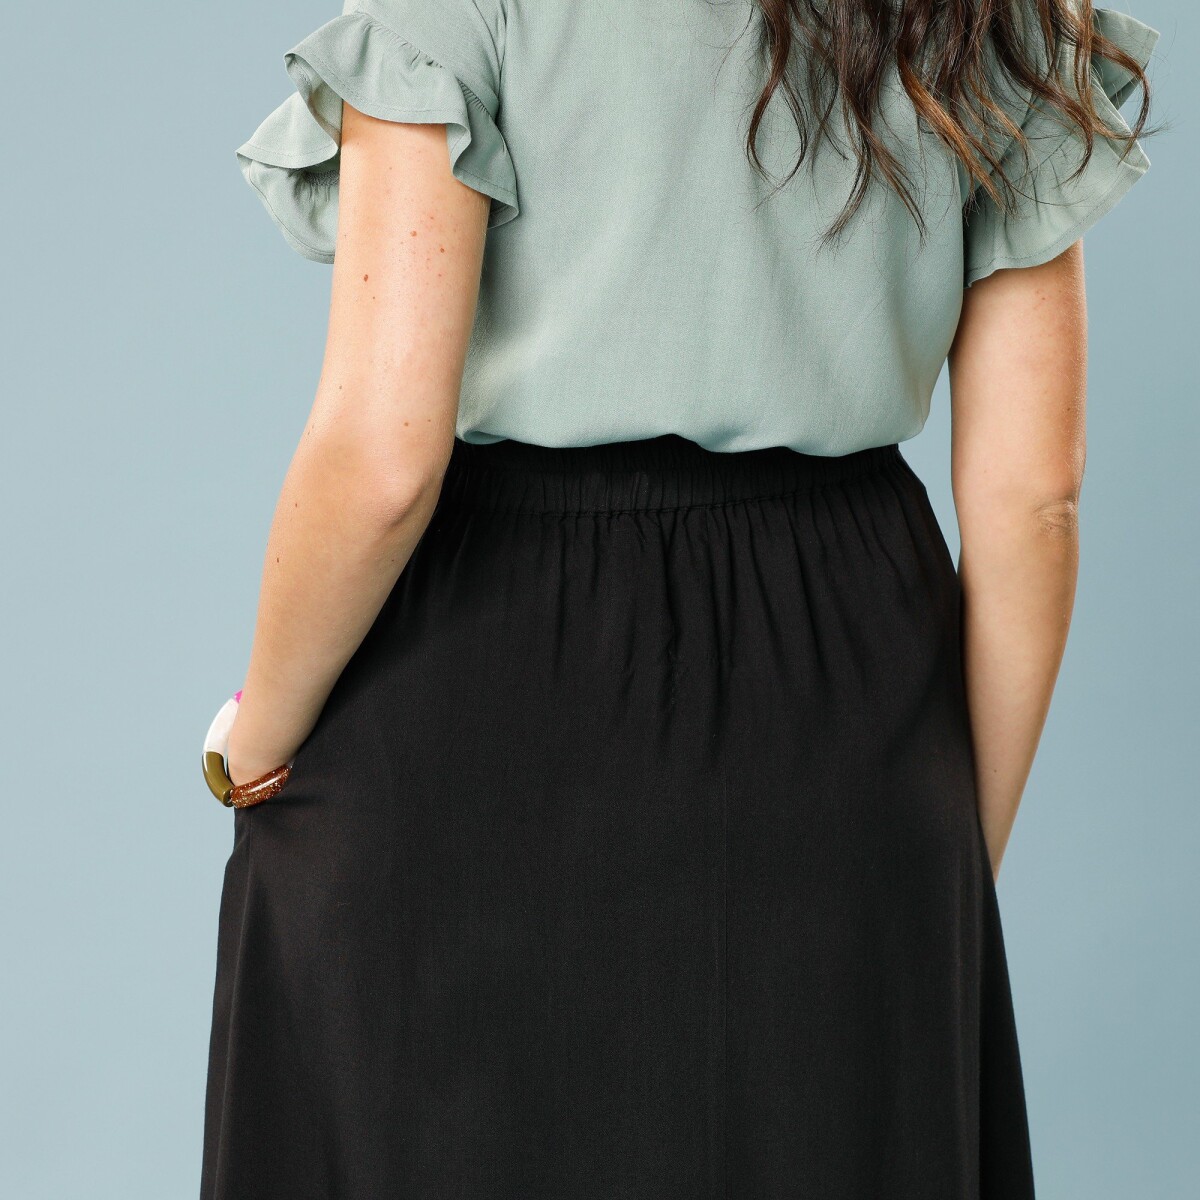 Jednofarebná midi sukňa s gombíkmi pre nižšiu postavu